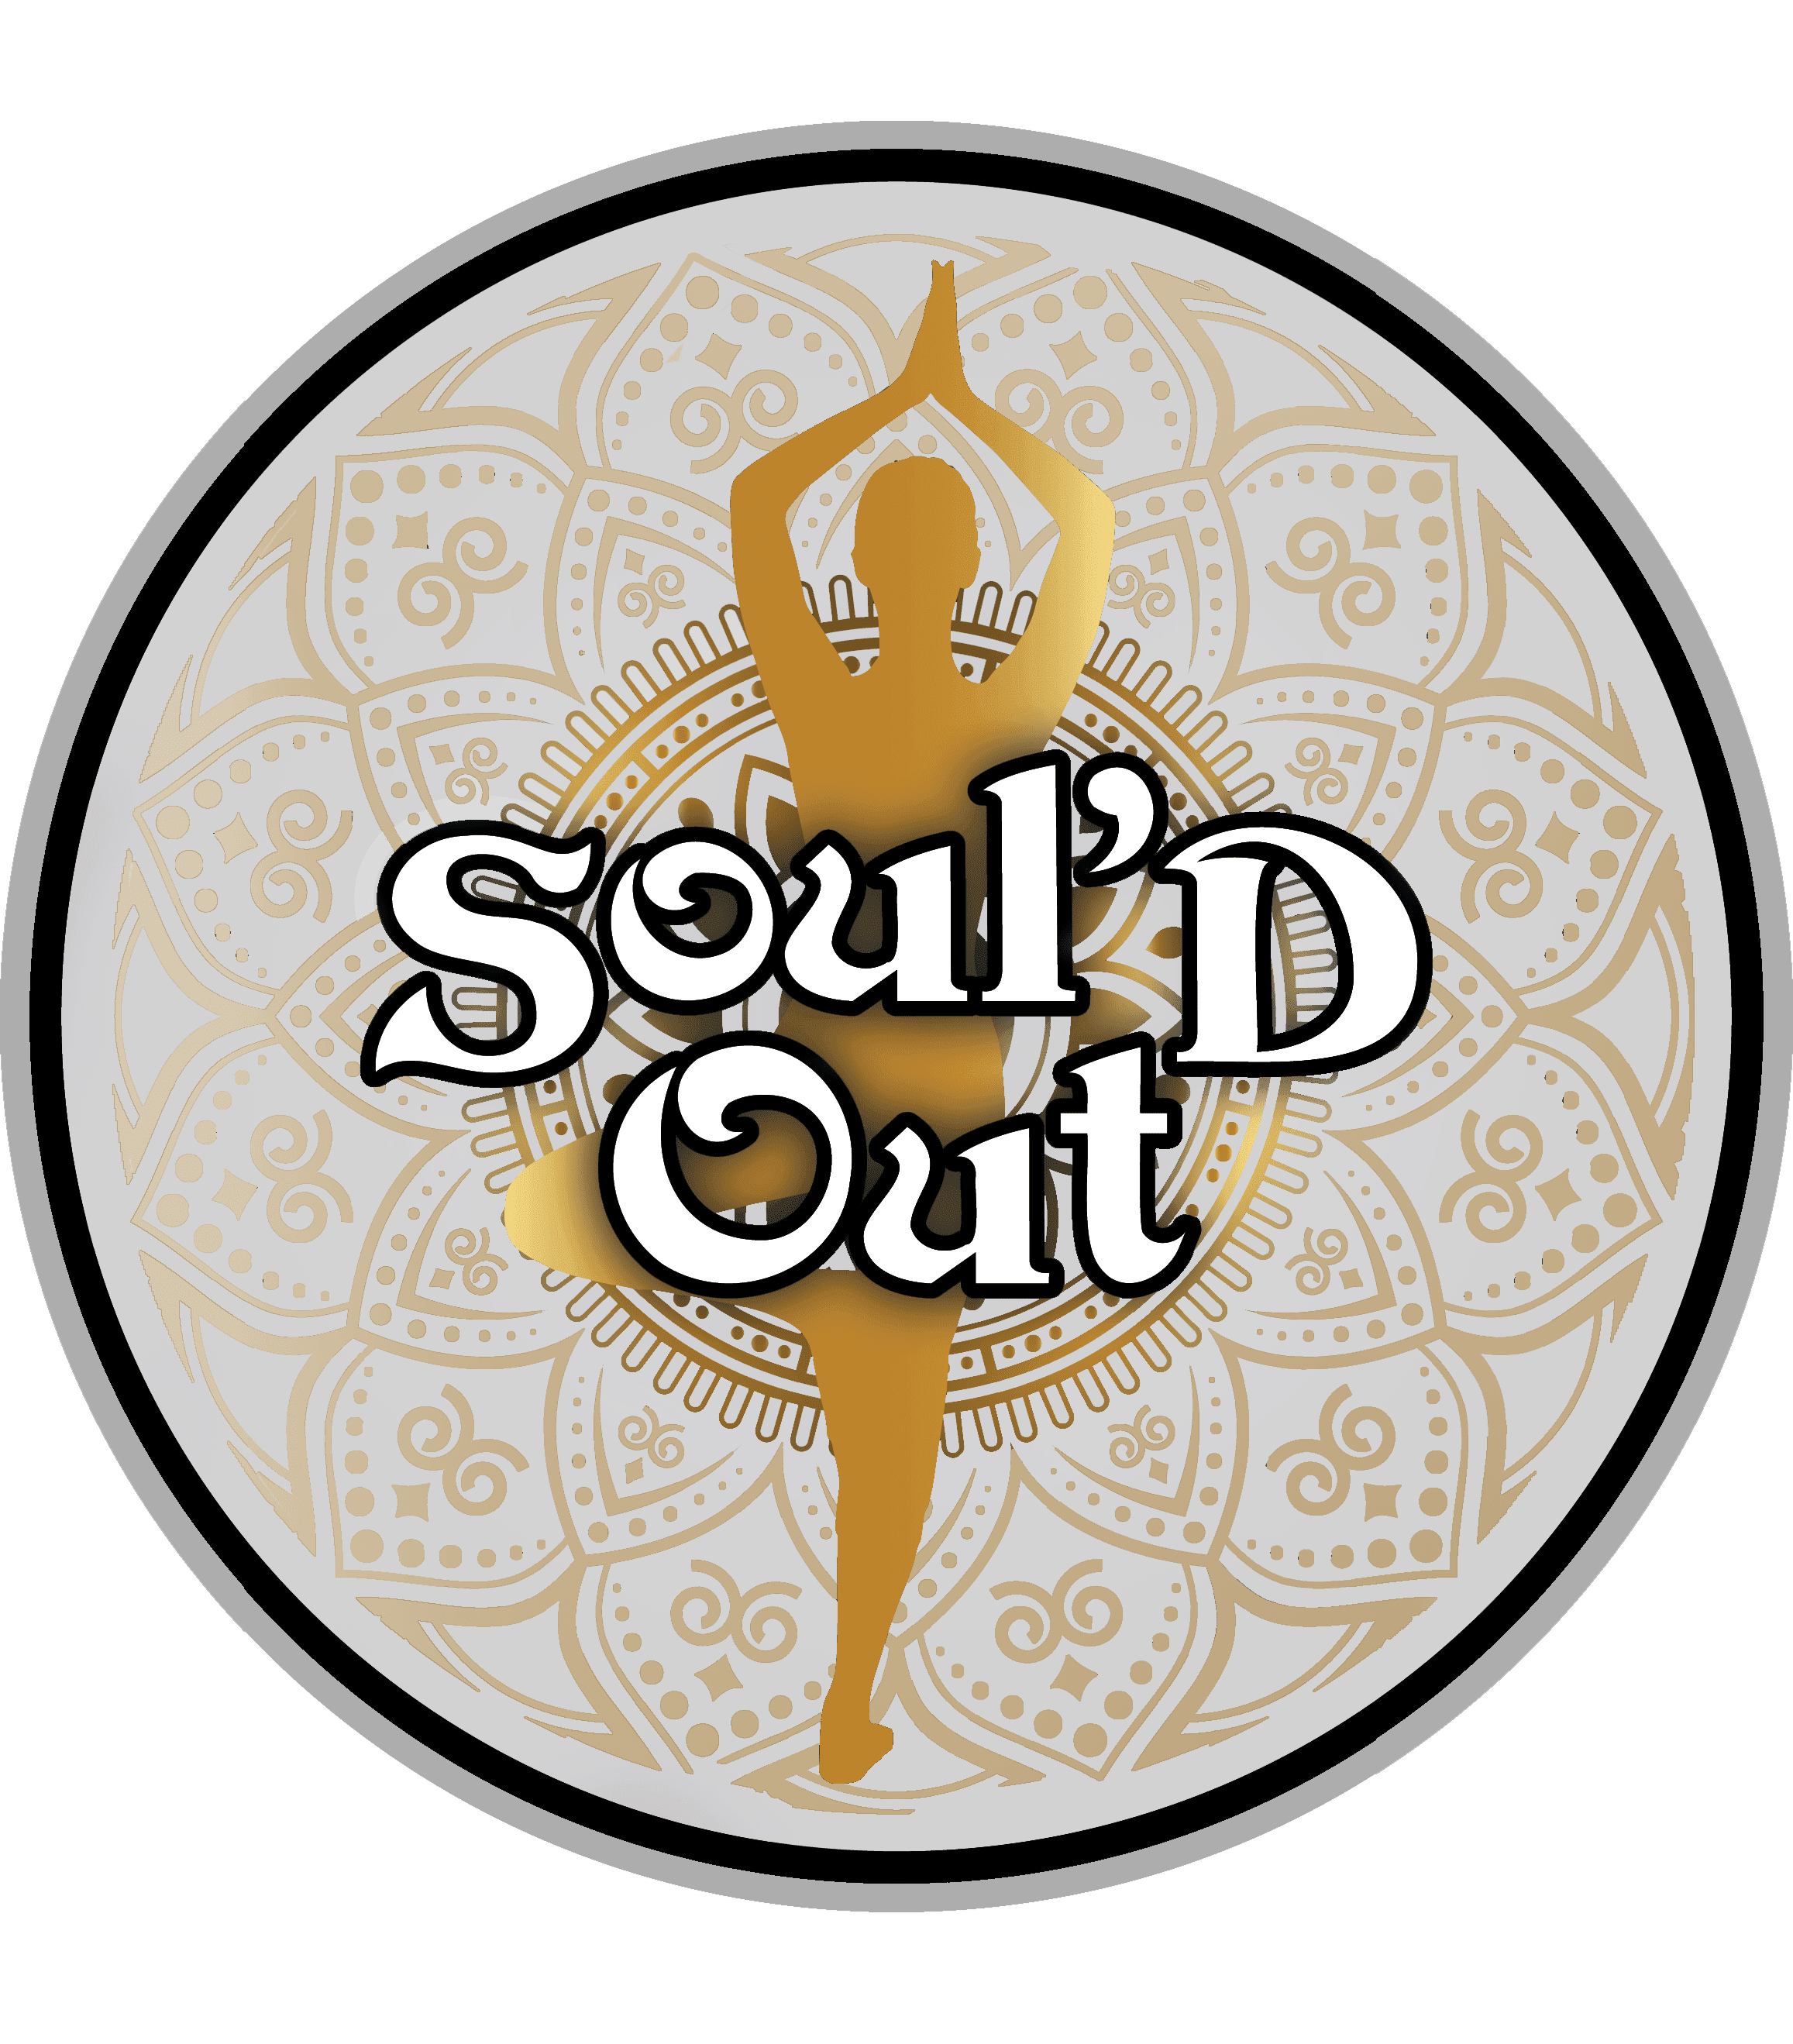 Soul'd Out